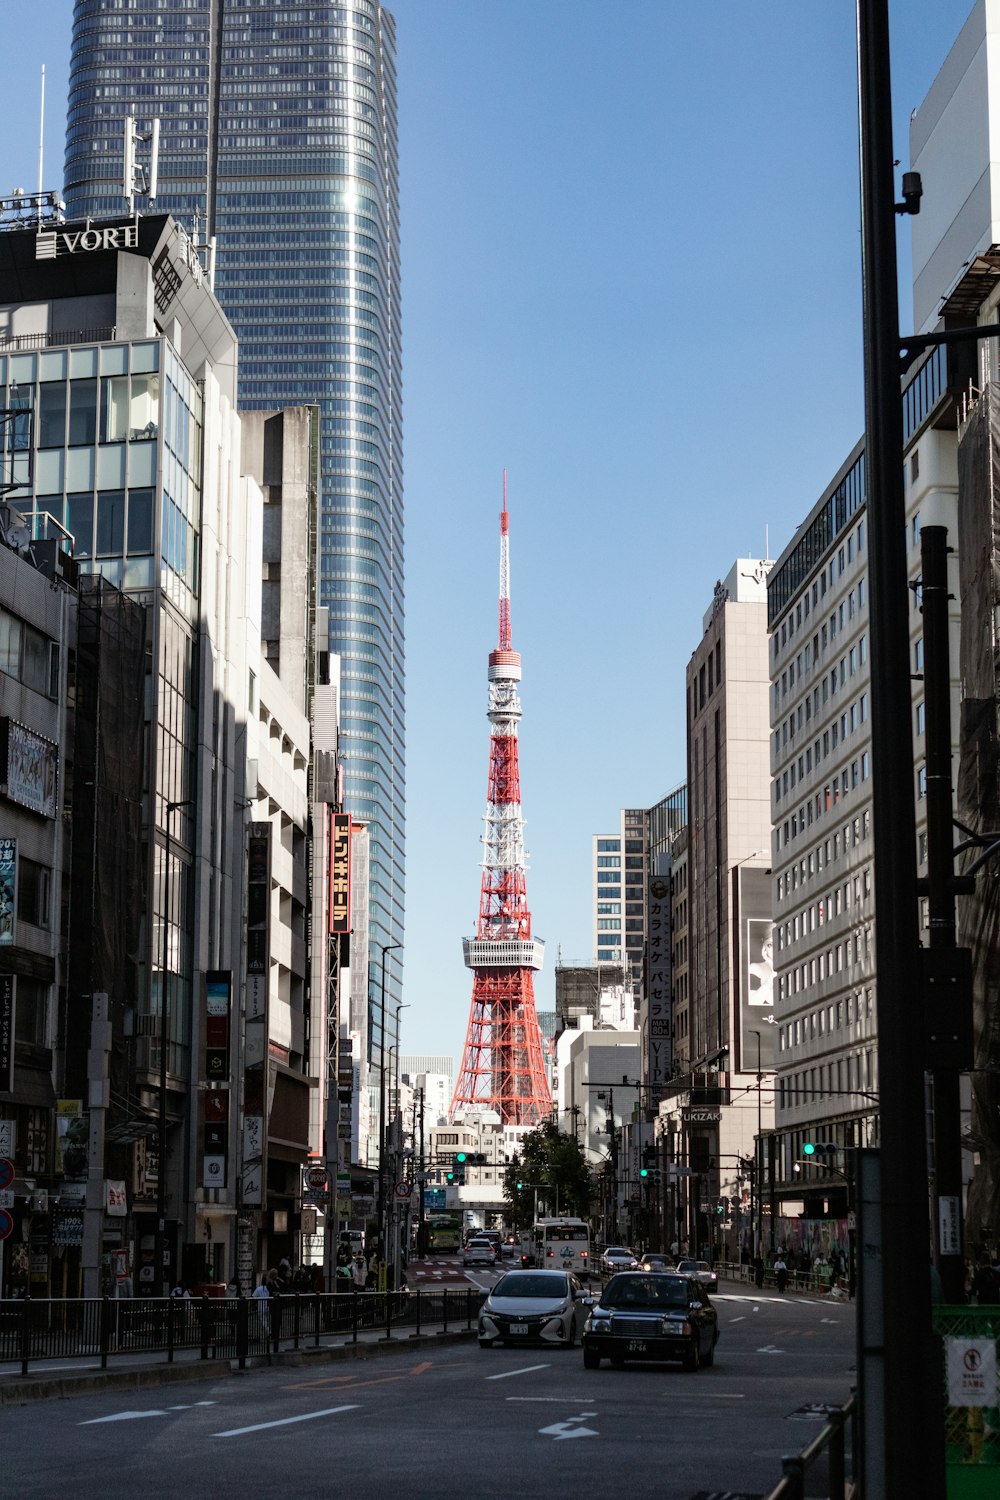 Ein rot-weißer Turm mitten in der Stadt